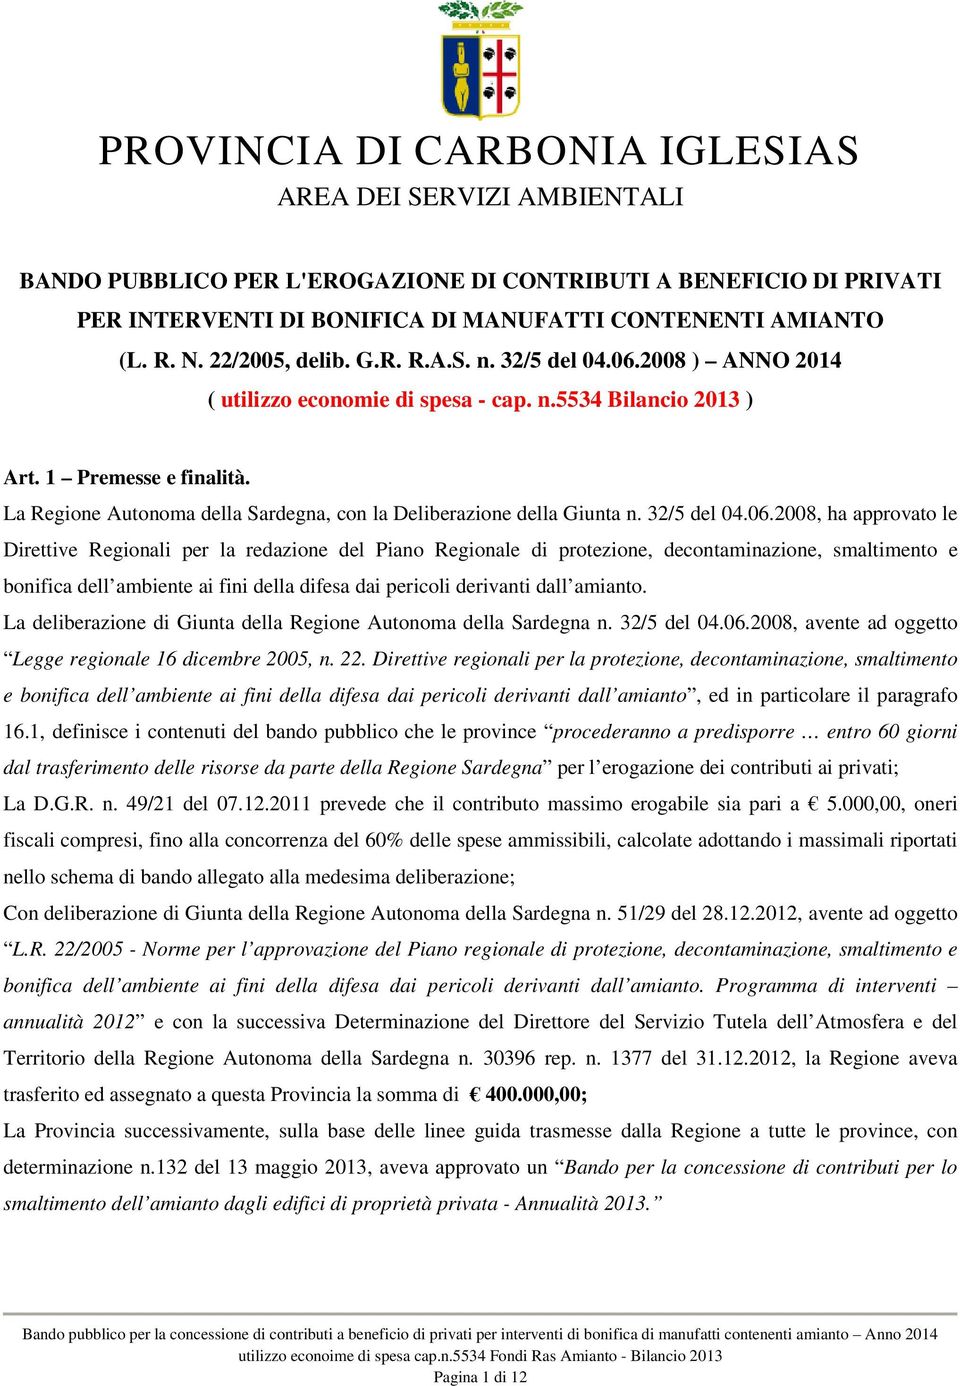 La Regione Autonoma della Sardegna, con la Deliberazione della Giunta n. 32/5 del 04.06.